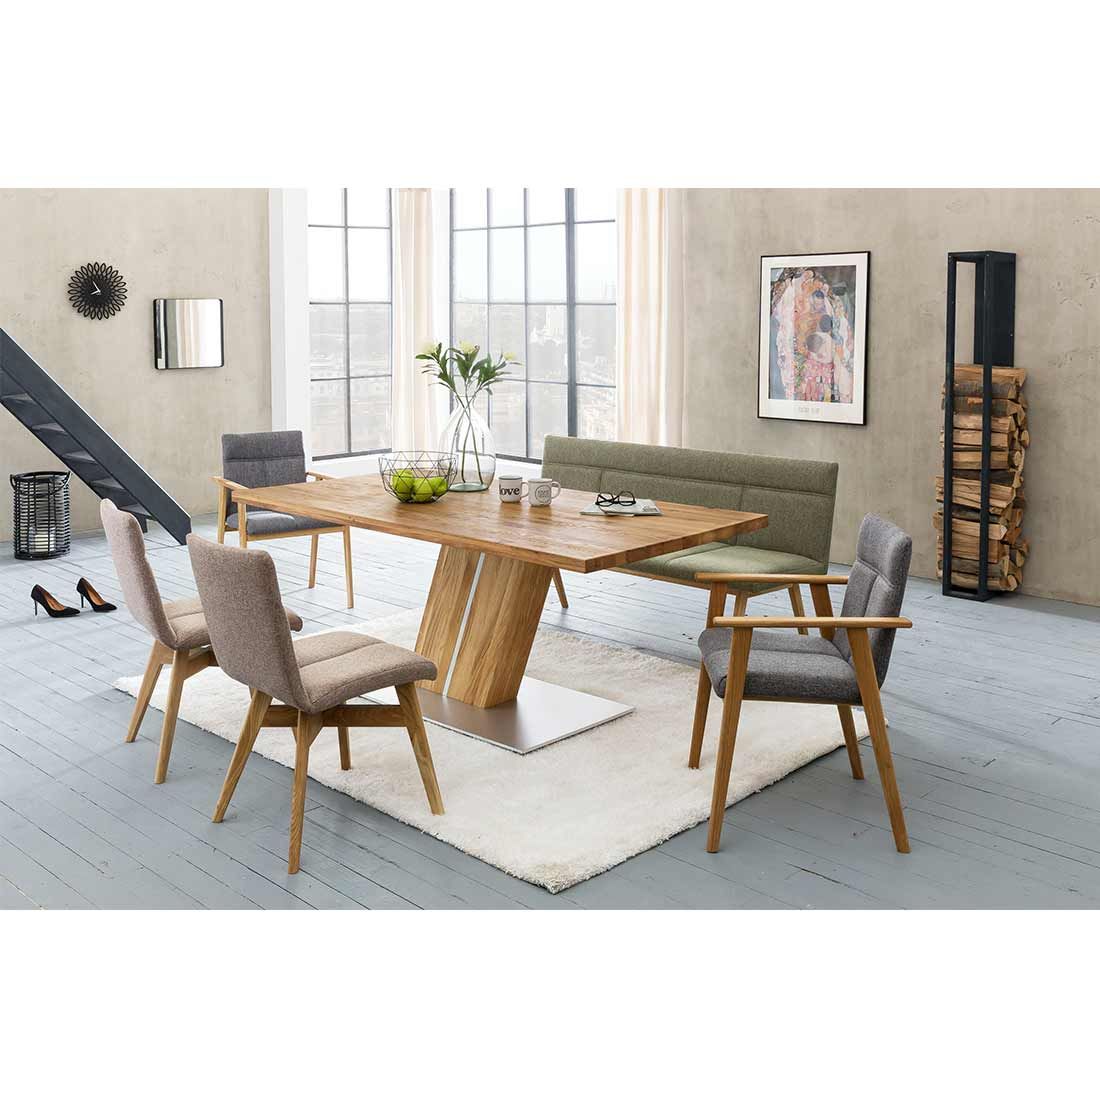 Standard Furniture Calgary Esstisch 220x100cm